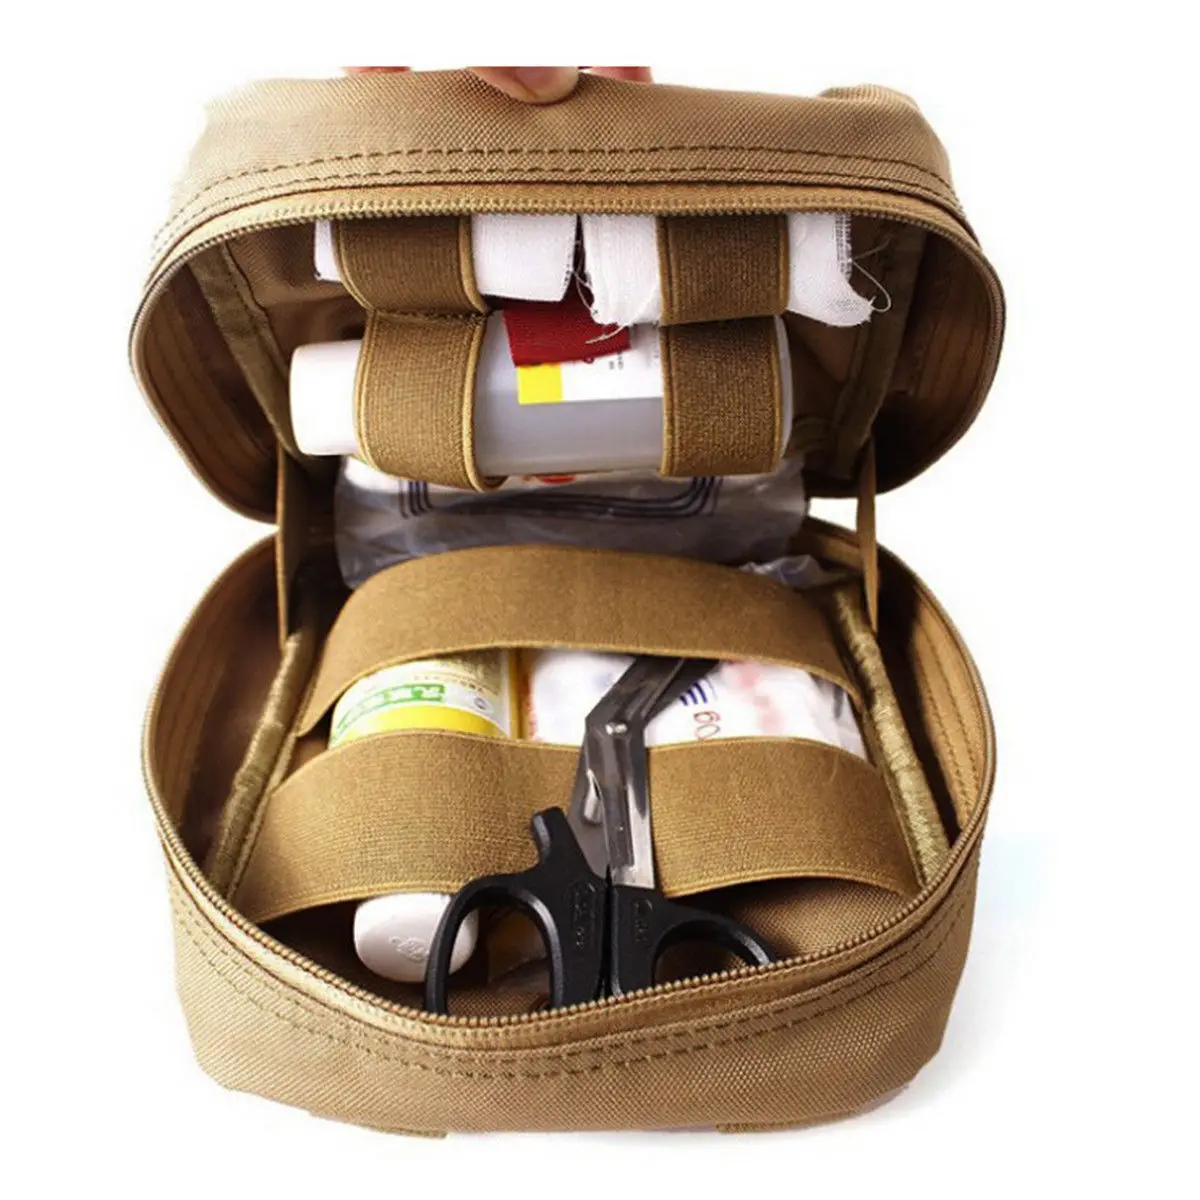 Walkie-talkie пакет медицина уличная сумка тактика медицинская сумка Красный Крест пакет спасательный пакет на открытом воздухе карман